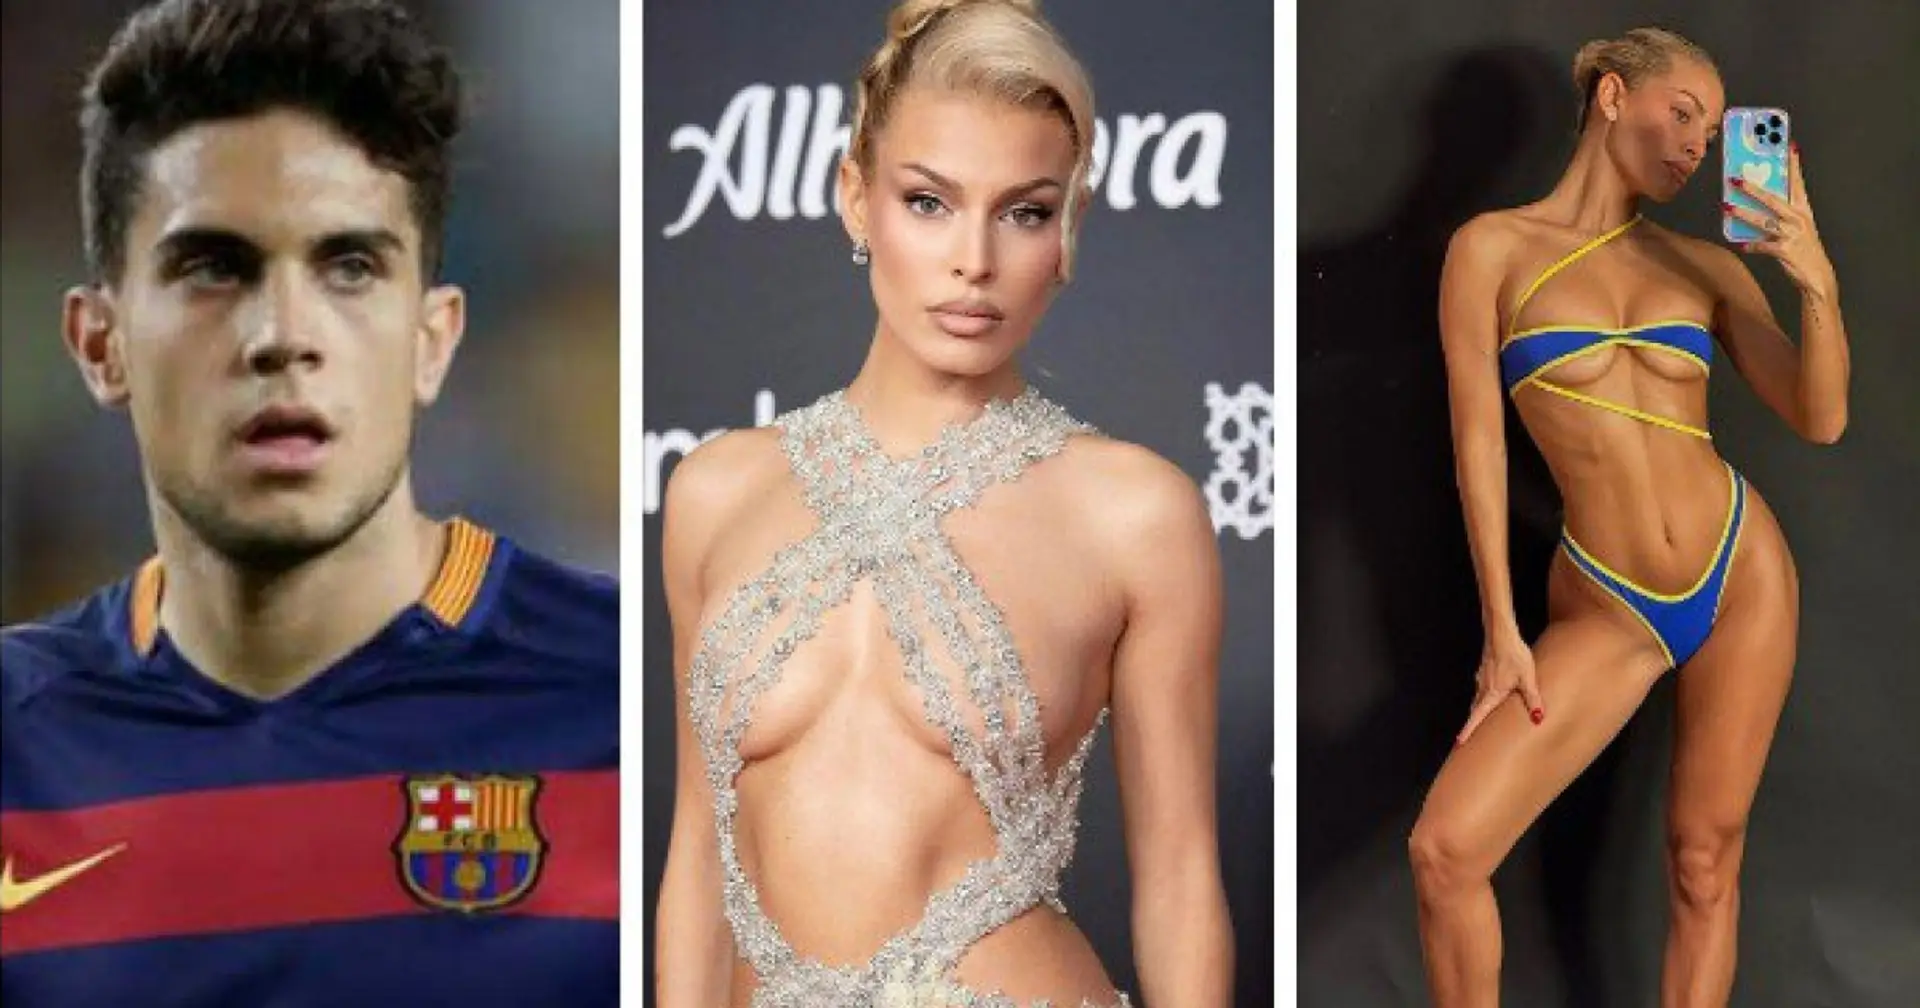 Die Freundin des ehemaligen Barcelona-Spielers Marc Bartra hat mit heißen Fotos die sozialen Medien erobert